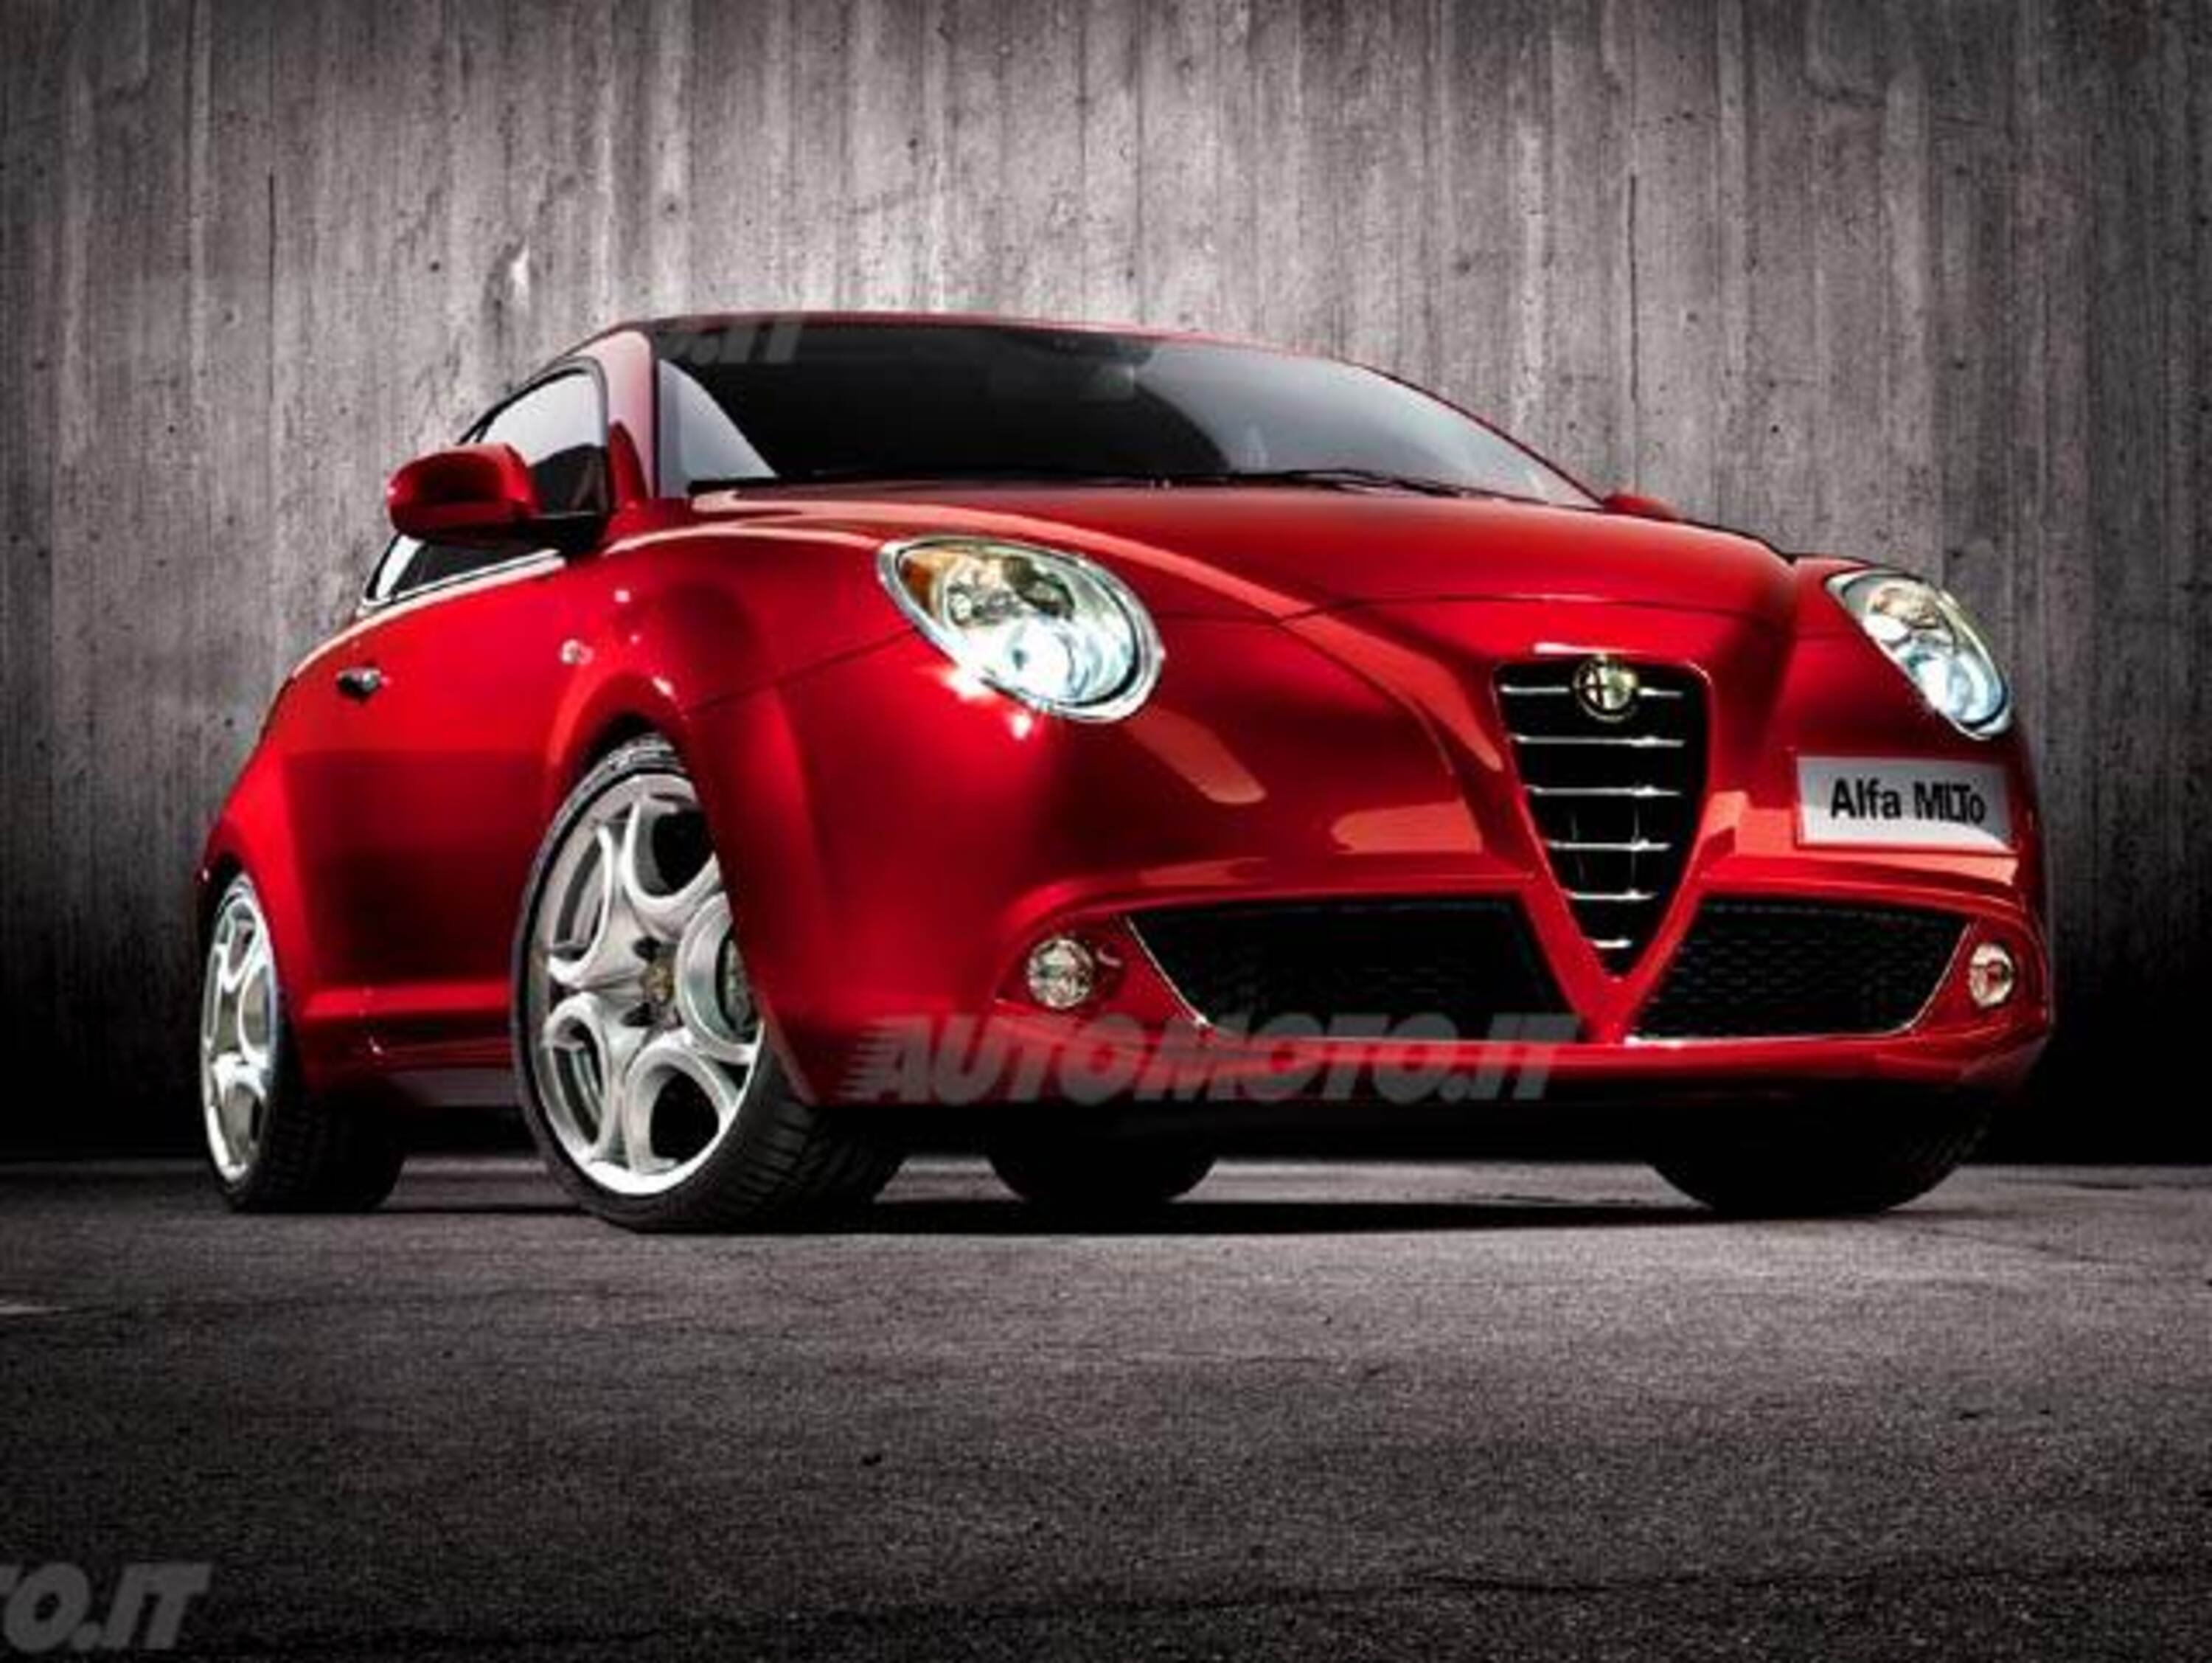 Alfa Romeo MiTo 1.6 JTDm-2 S&S Progression (01/2011 - 06/2011